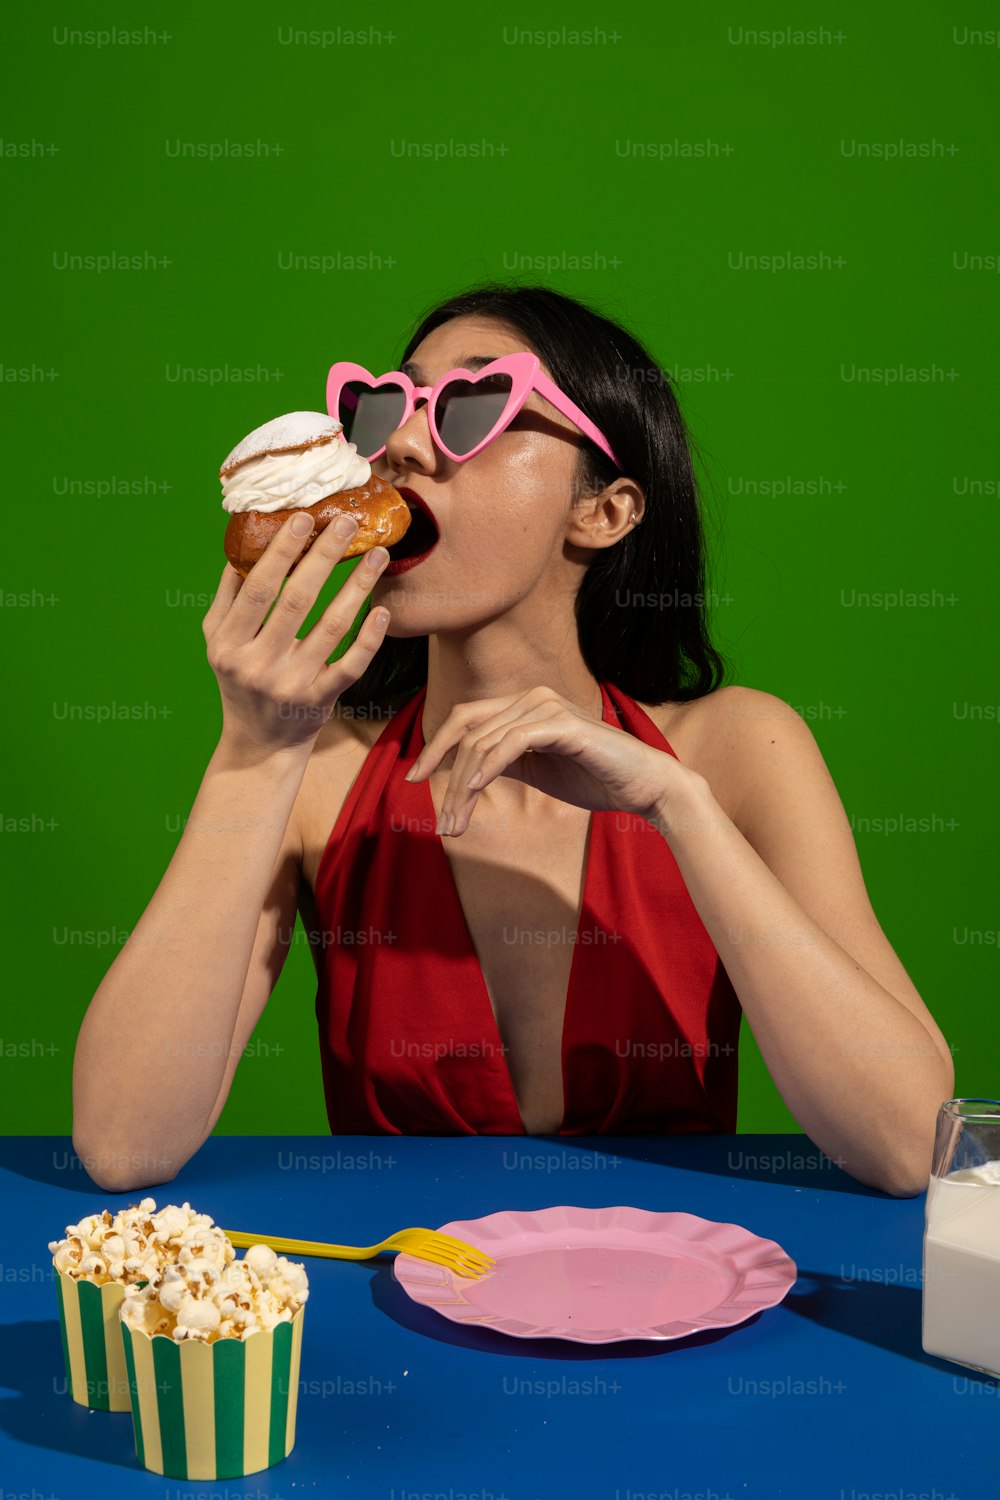 Una mujer con un vestido rojo comiendo una magdalena